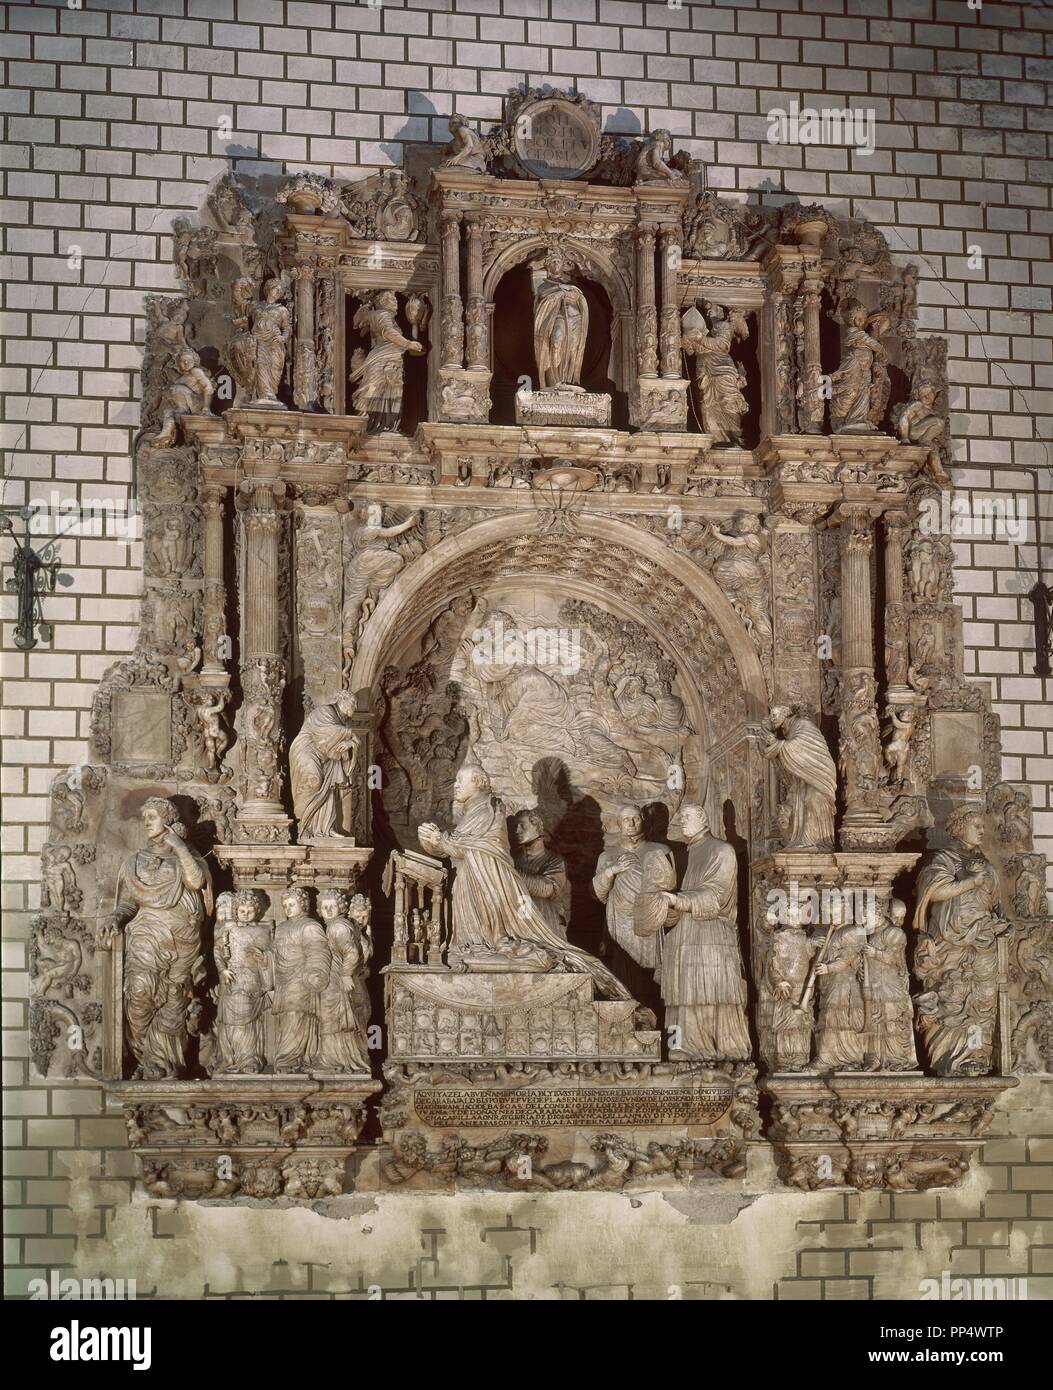 DE SEPULCRO GUTIERRE DE VARGAS - 1535 - ALABASTRO - ESTILO PLATERESCO. Autor: GIRALTE FRANCISCO. Lage: Capilla del Obispo. MADRID. Spanien. Stockfoto